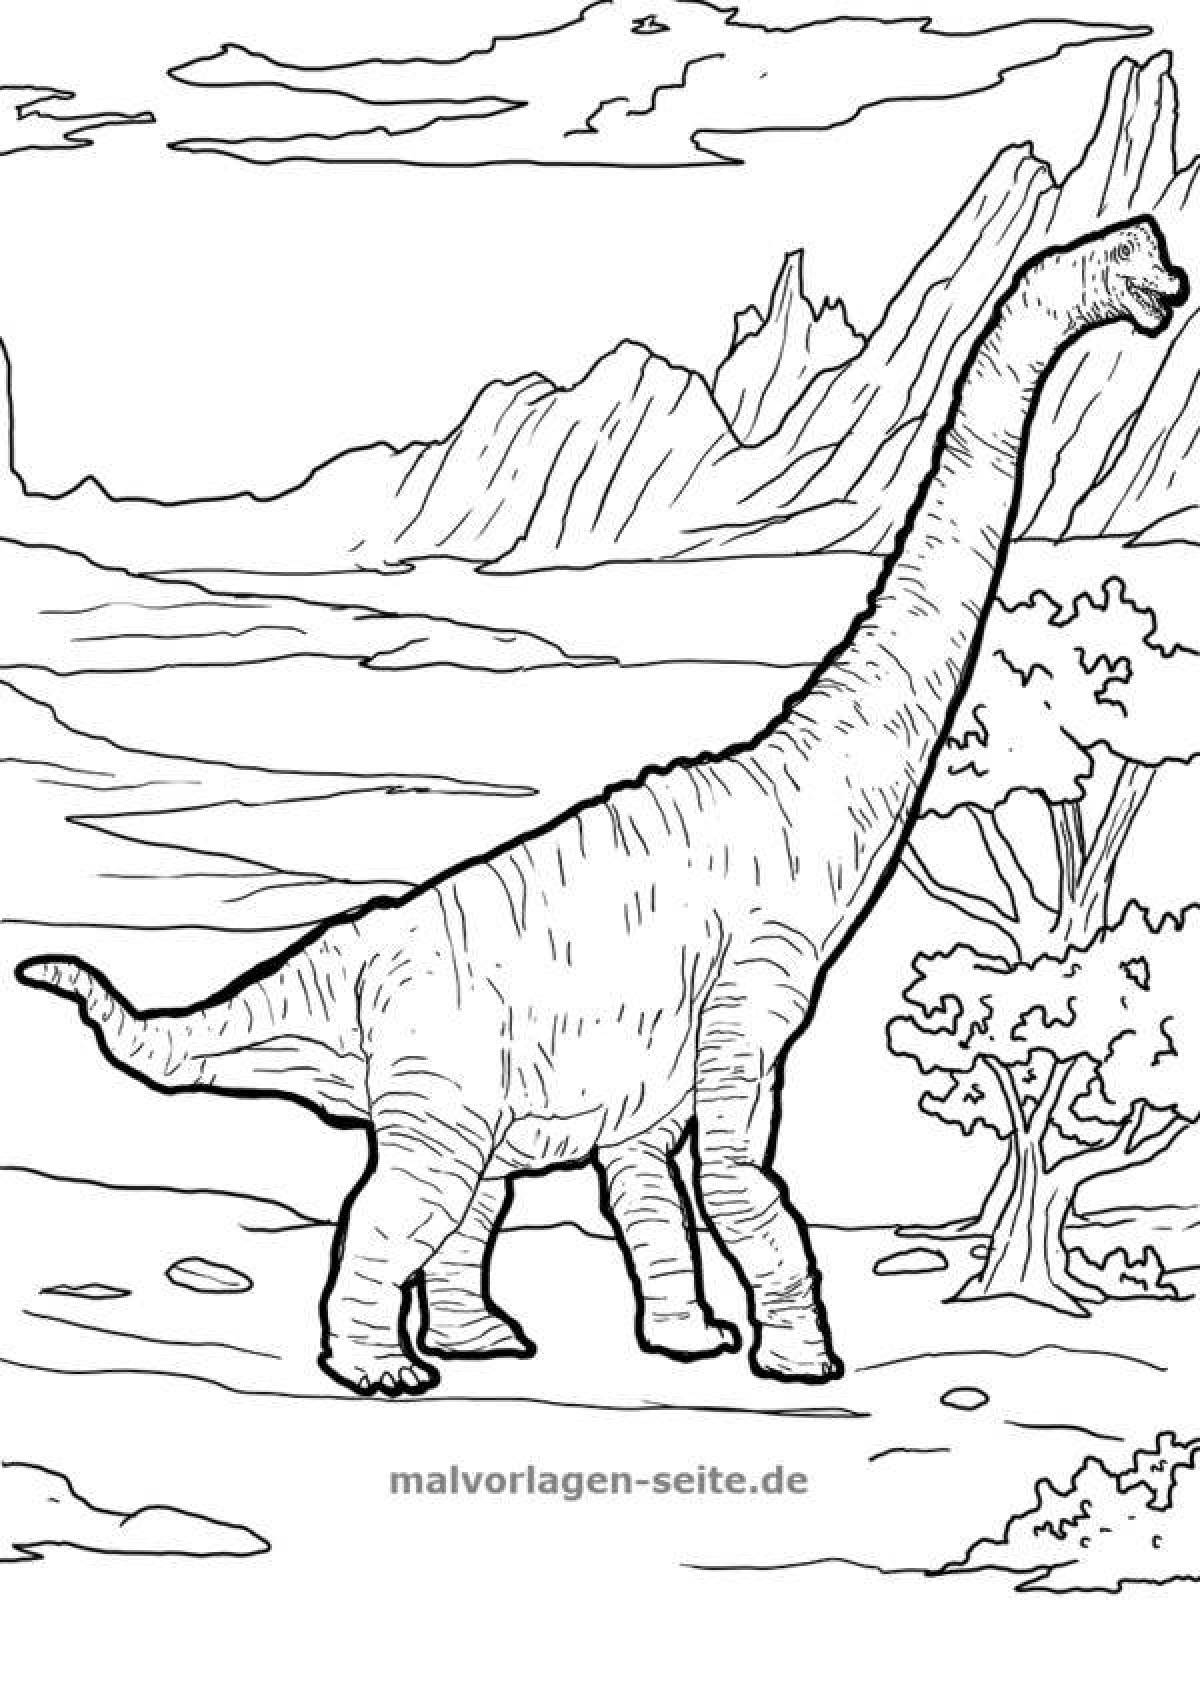 Изысканная раскраска брахиозавра